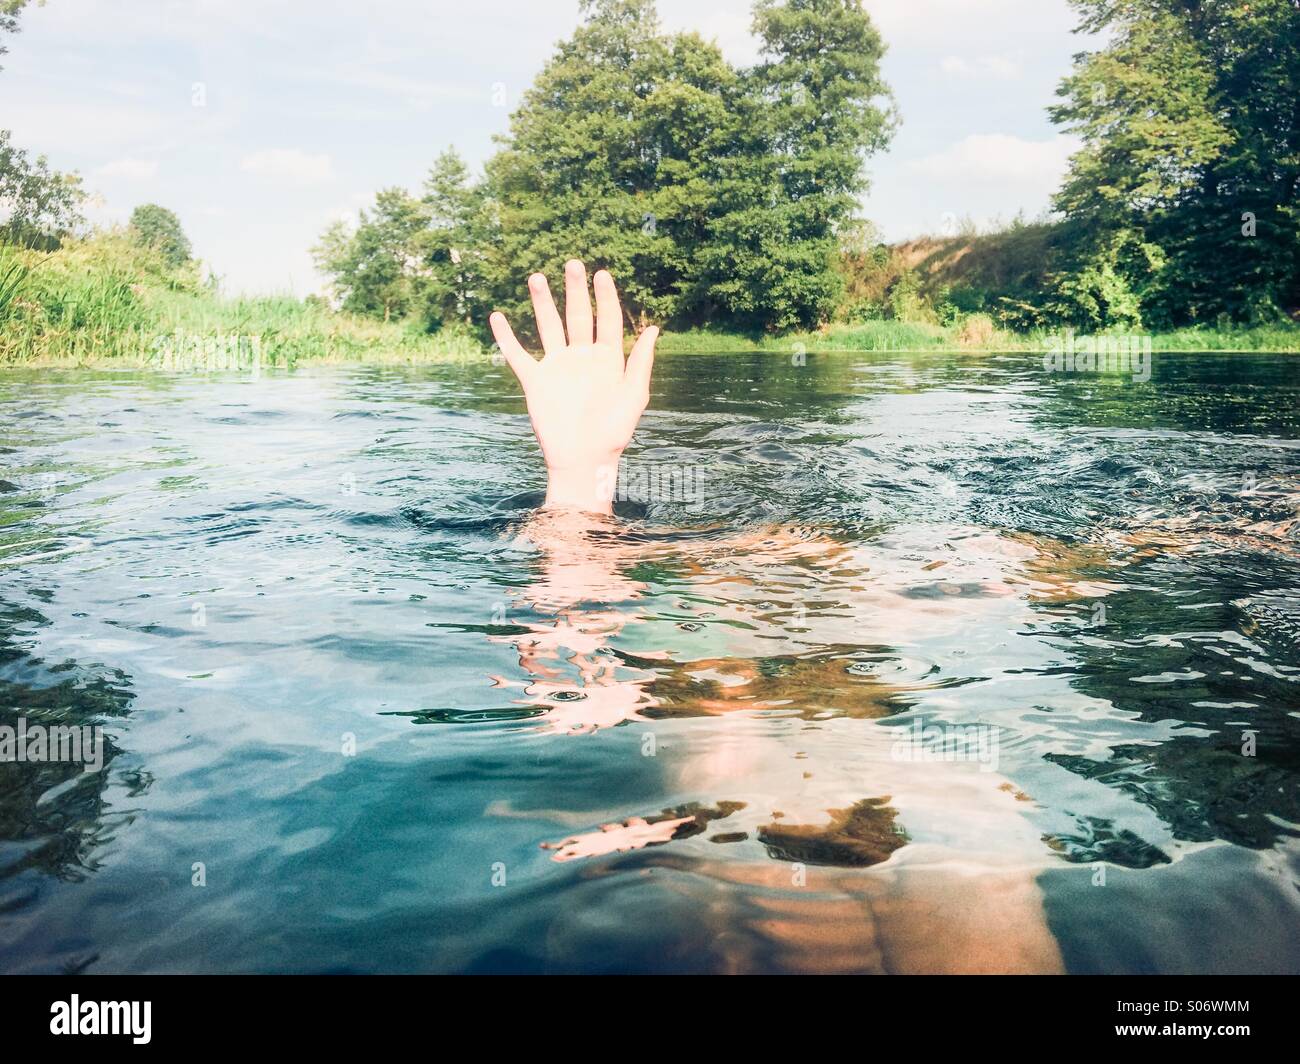 Ragazzo immerso in un fiume puro mantenendo la mano sopra l'acqua Foto Stock